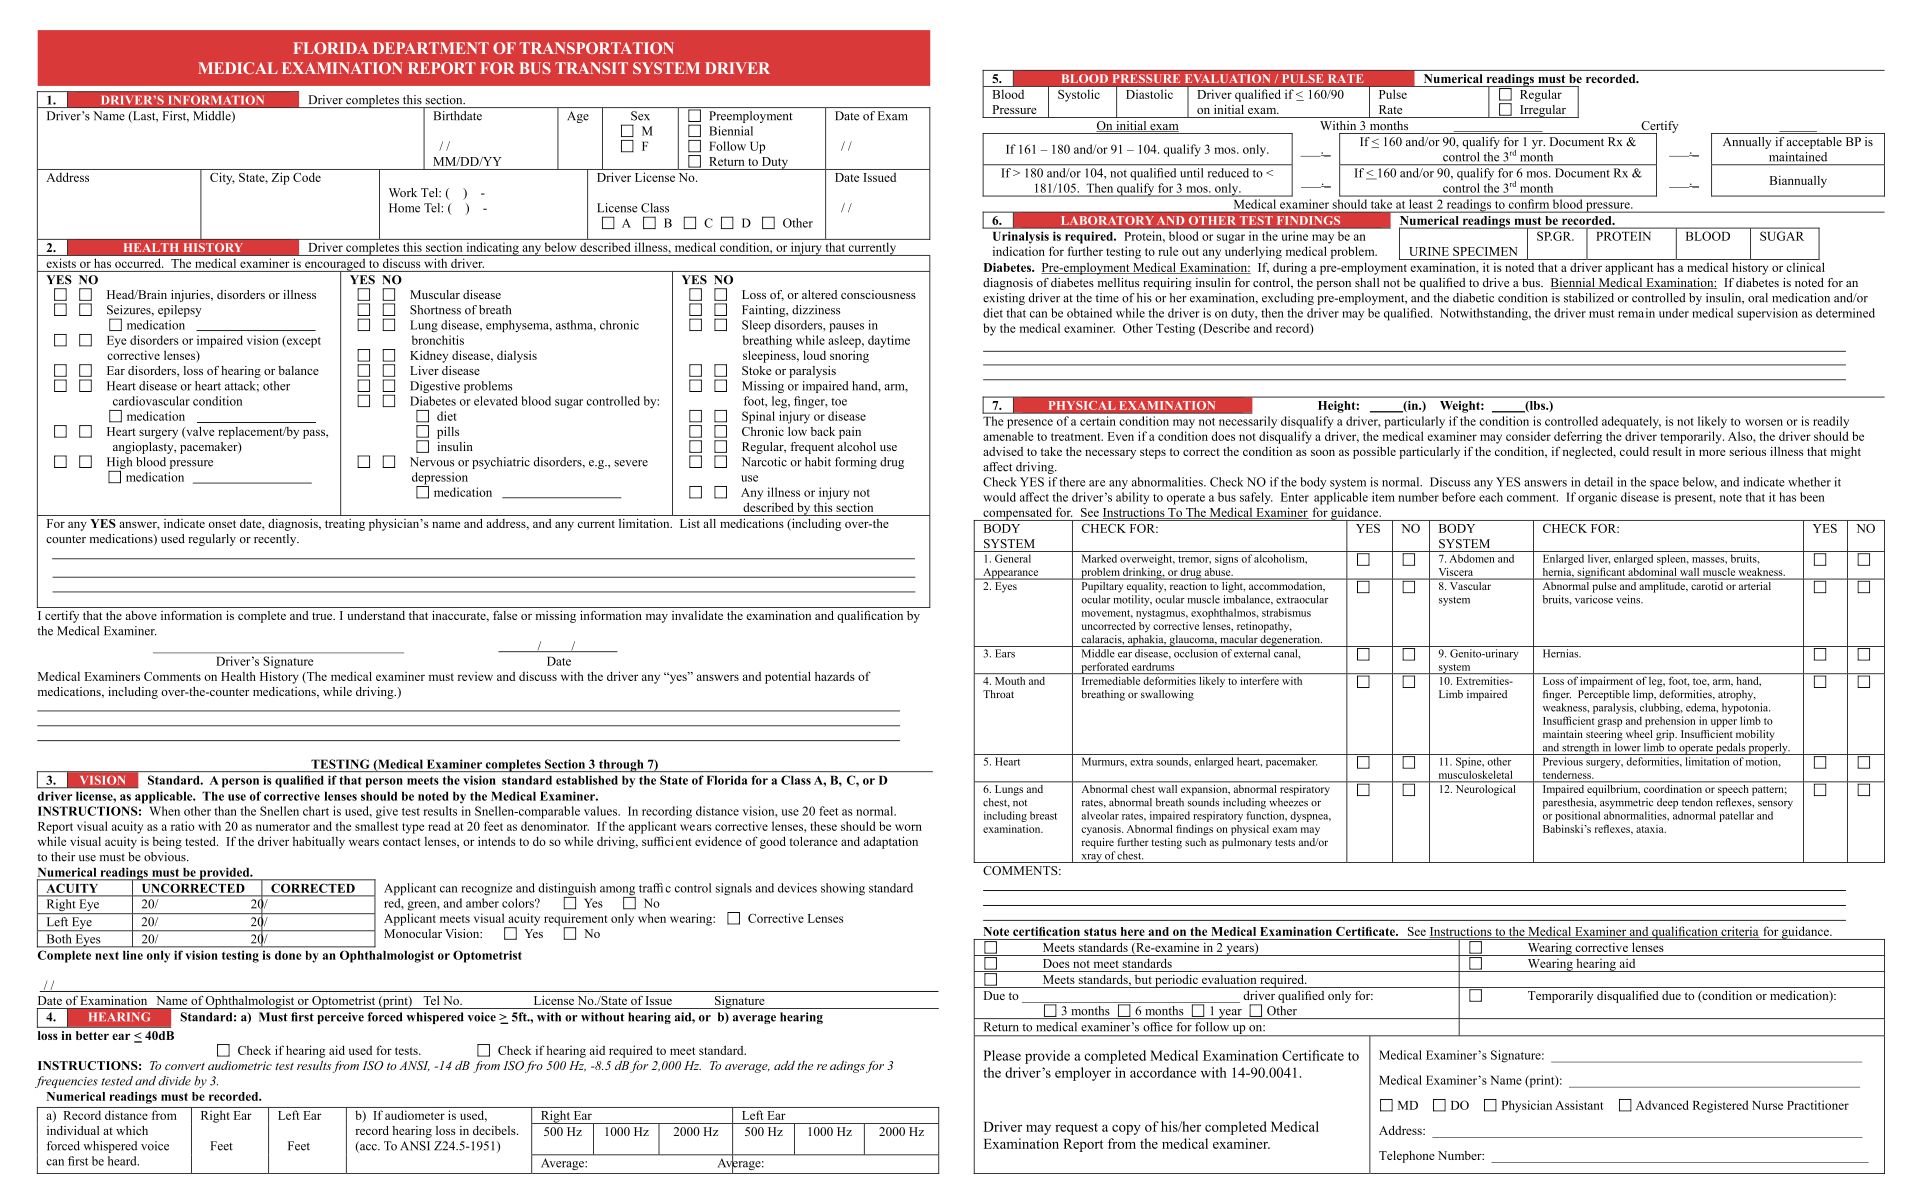 Florida DOT Medical Form Printable Template